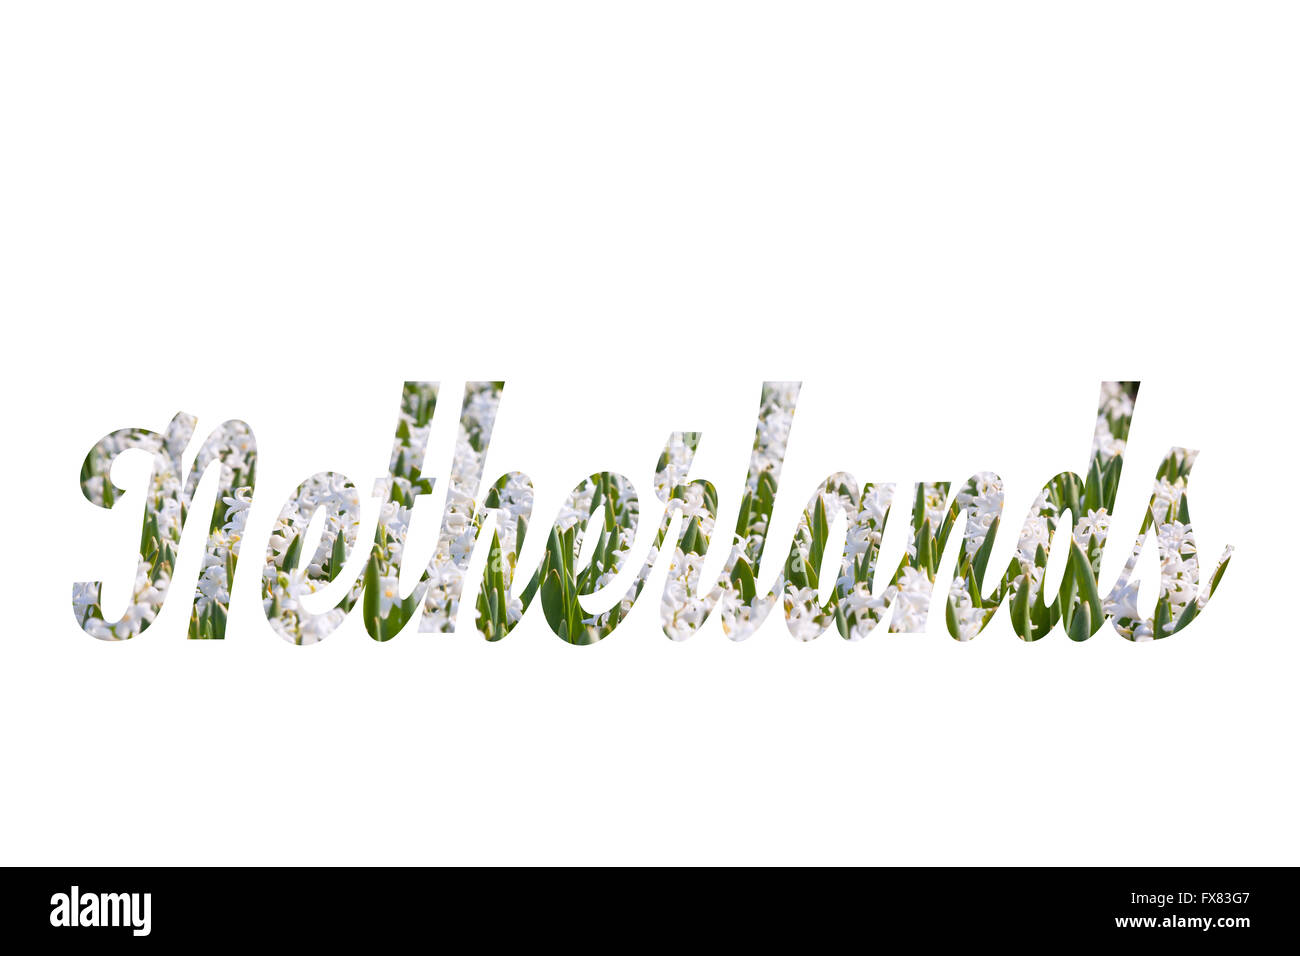 Nom du pays Pays-bas écrit à partir de fleurs jacinthes blanches Banque D'Images